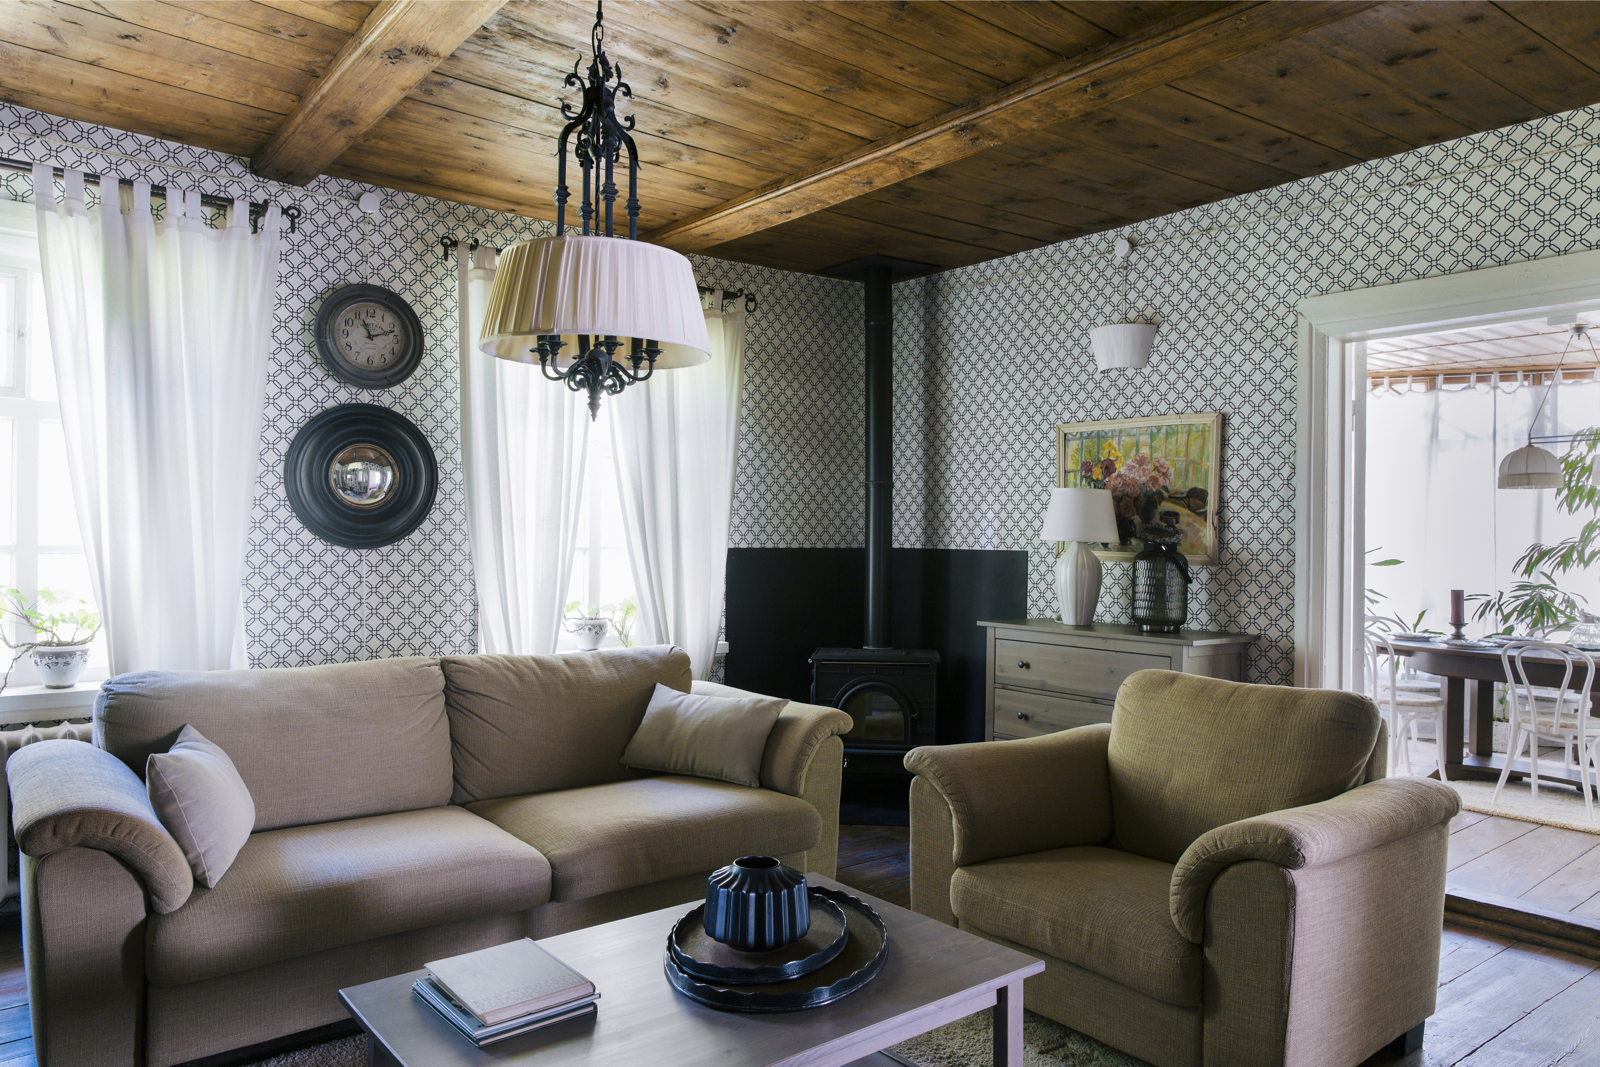 Phần trần dầm gỗ được giữ nguyên hiện trạng và chỉ vệ sinh sạch sẽ. Bộ sofa và ghế bành tone màu trầm ấm, kết hợp chiếc bàn nước gỗ tối giản cho cảm giác gần gũi hơn.